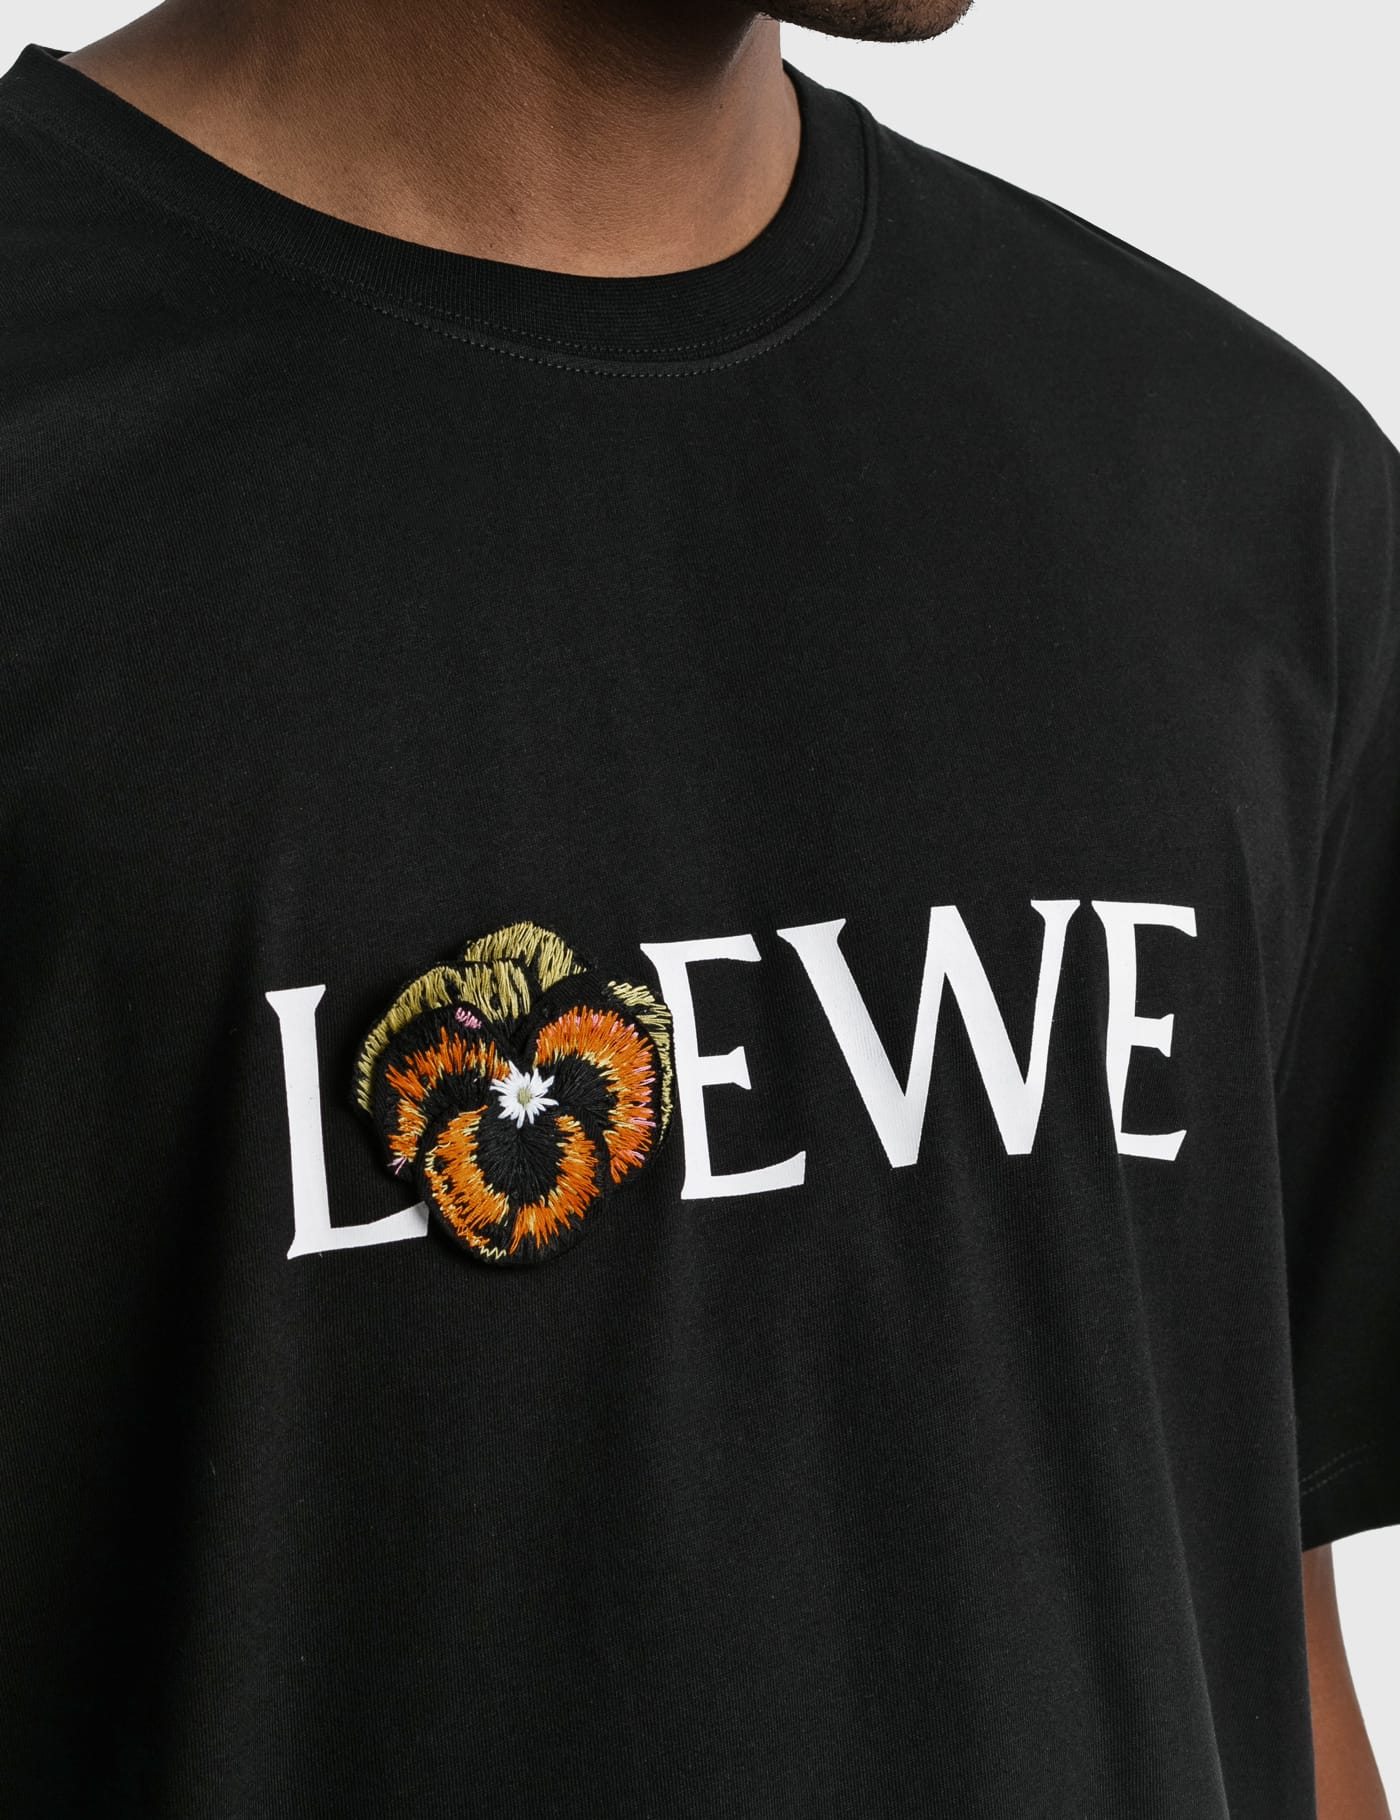 Loewe - パンジー Tシャツ | HBX - ハイプビースト(Hypebeast)が厳選したグローバルファッション&ライフスタイル